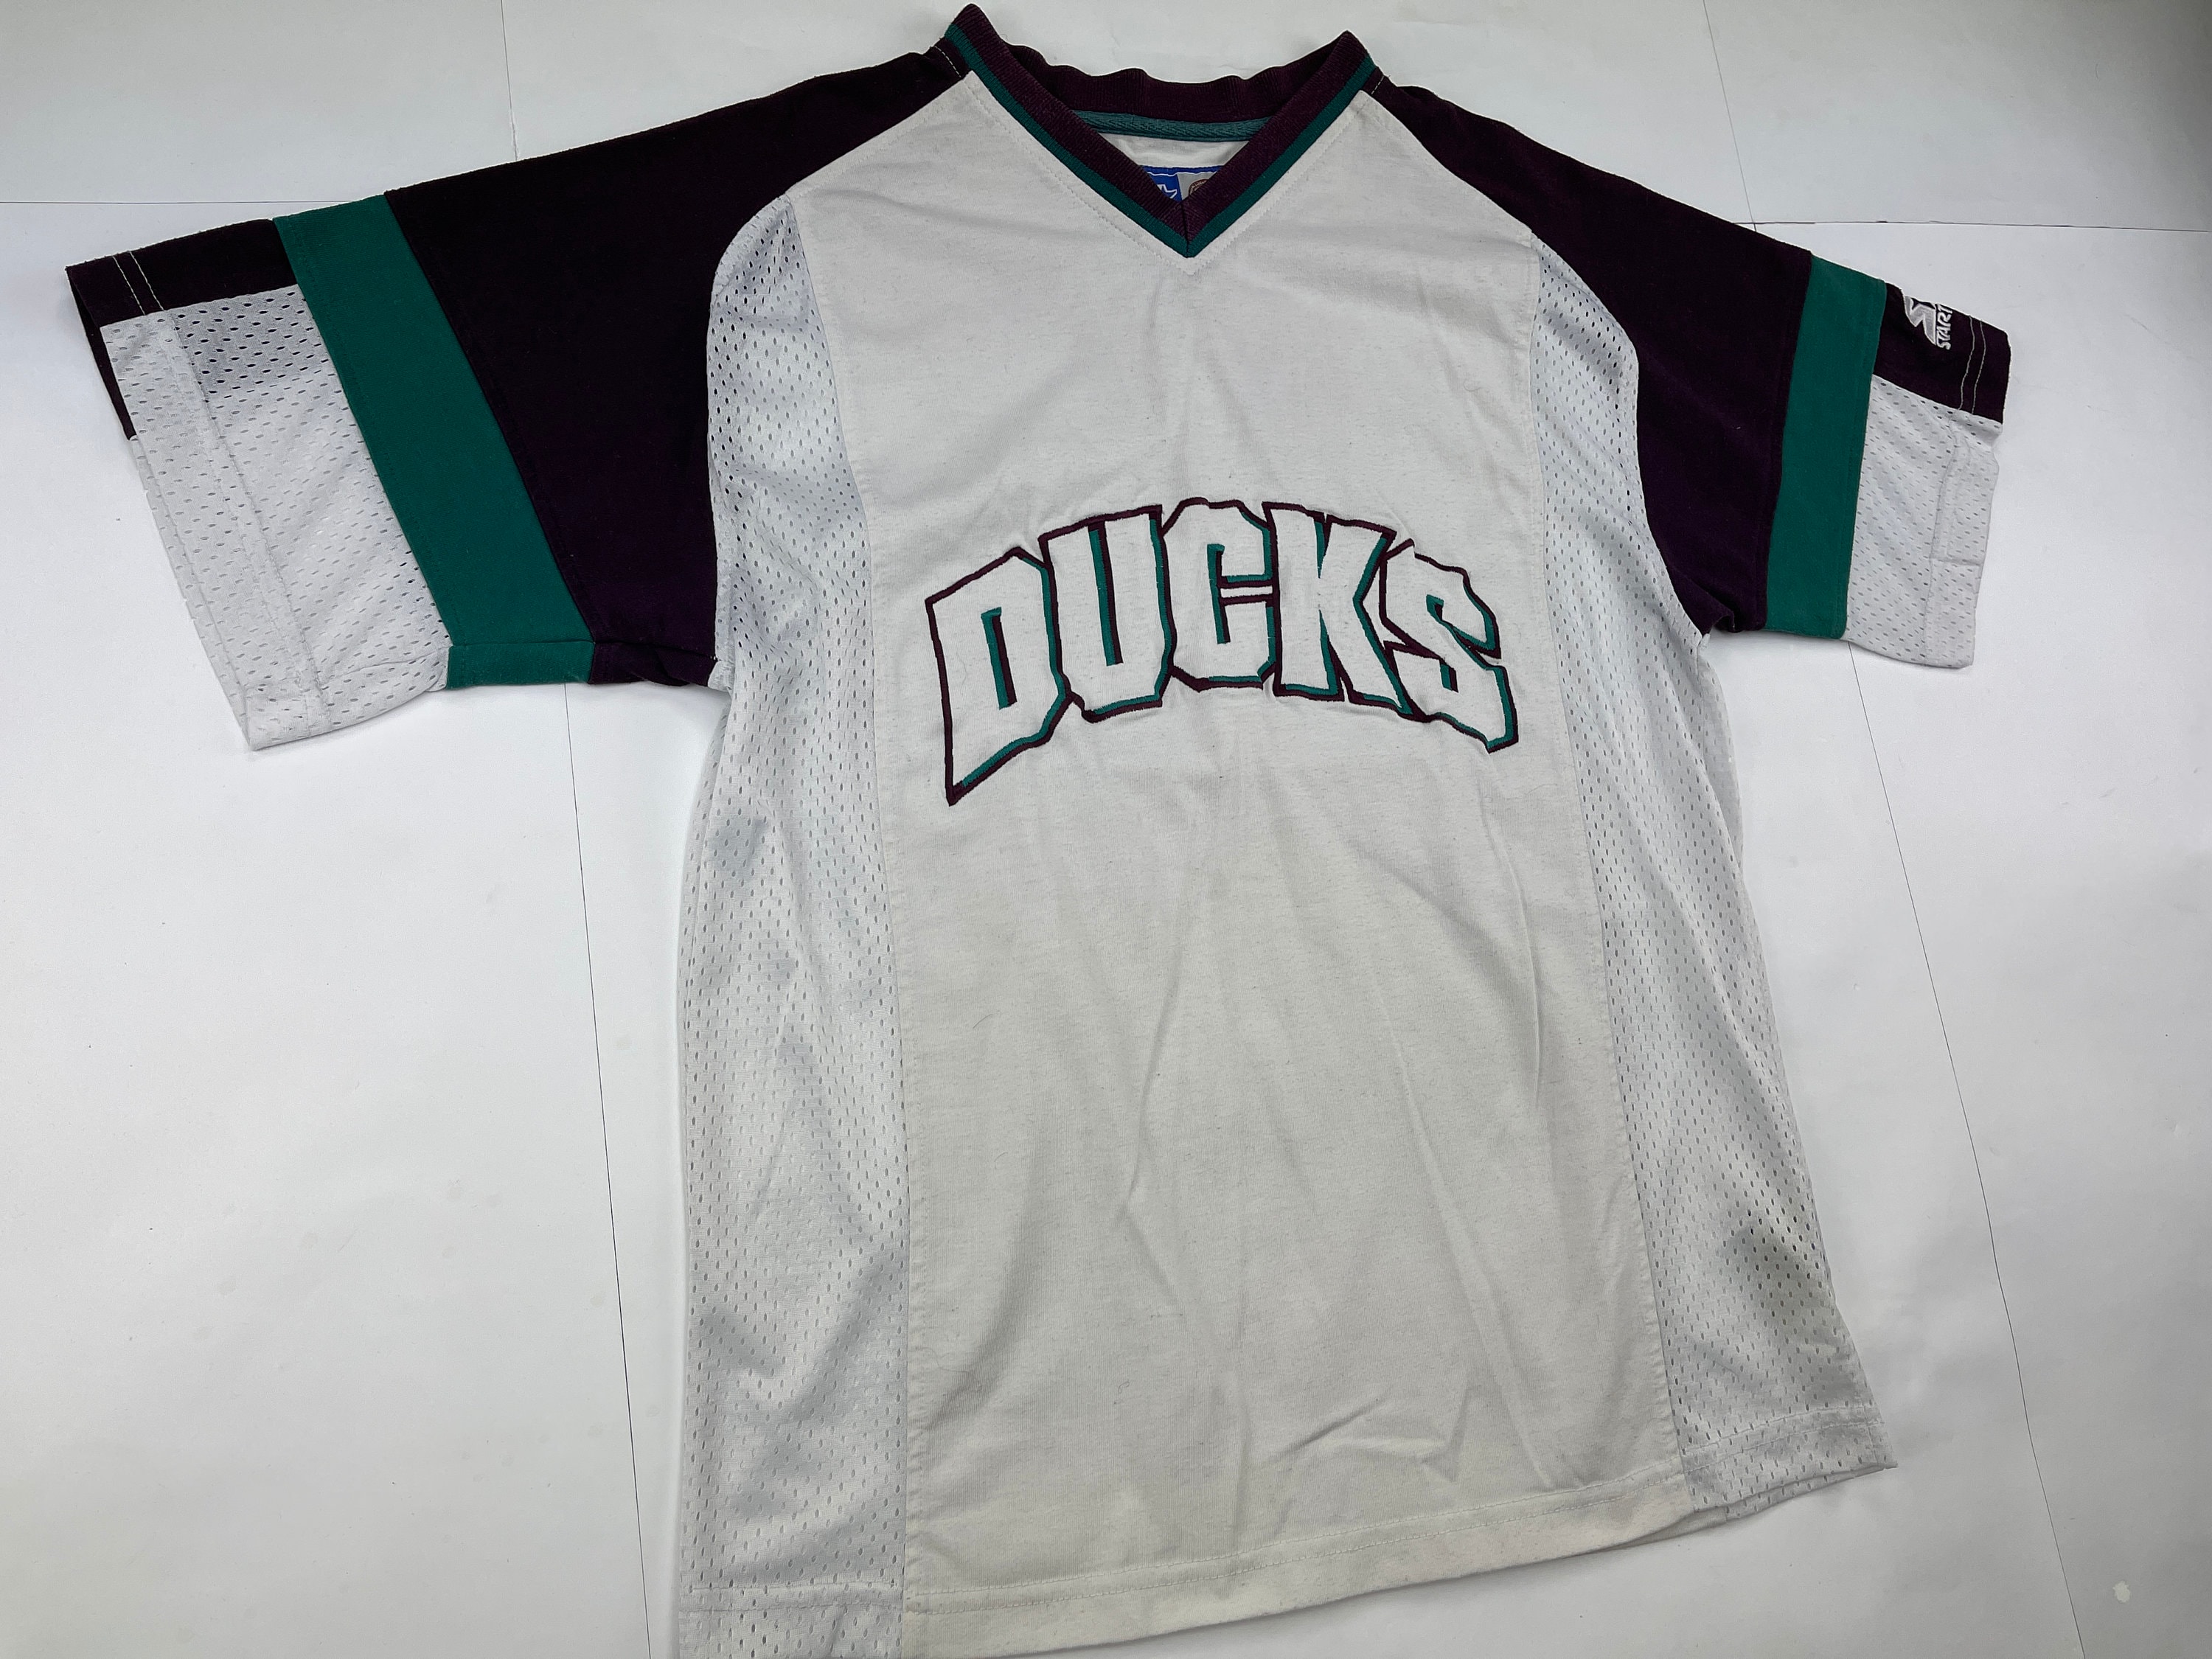 Vintage Anaheim Ducks NHL Hockey Adidas Player Issue Jersey size